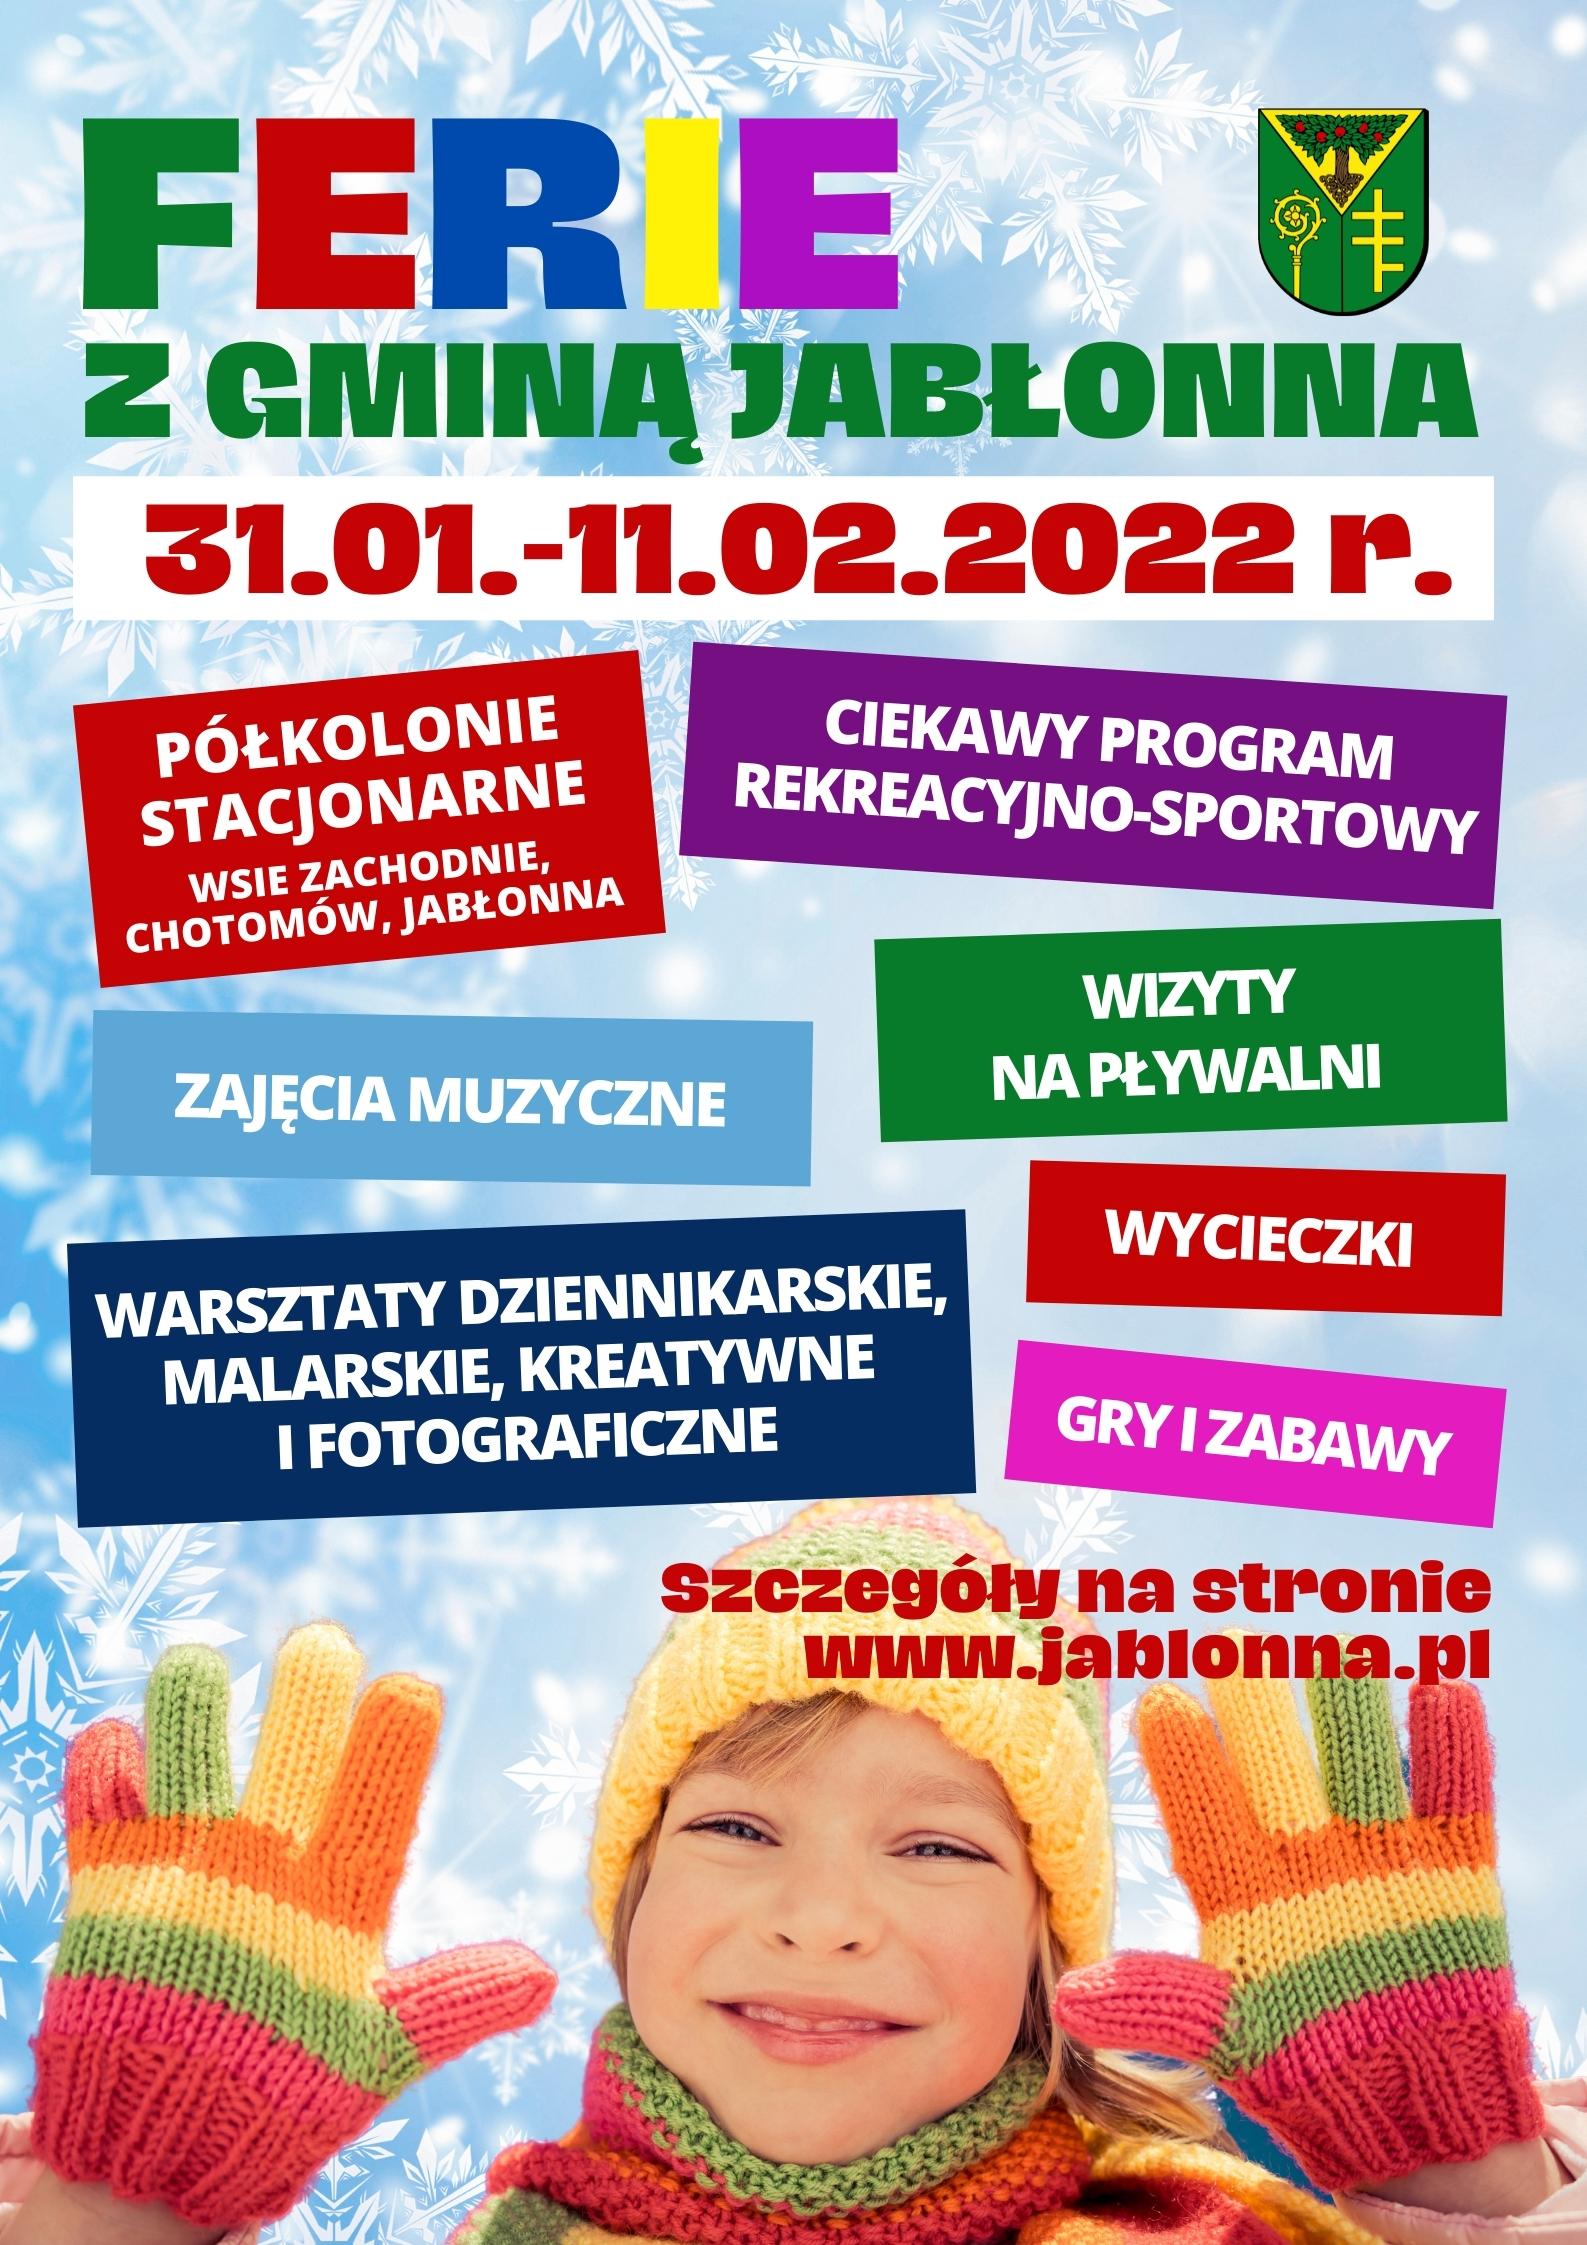 Plakat informacyjny Ferie z Gminą Jabłonna - półkolonie stacjonarne, zajęcia muzyczne, wizyty na pływalni, ciekawy program rekreacyjno-sportowy, gry i zabawy, warsztaty dziennikarskie, malarskie, kreatywne i fotograficzne